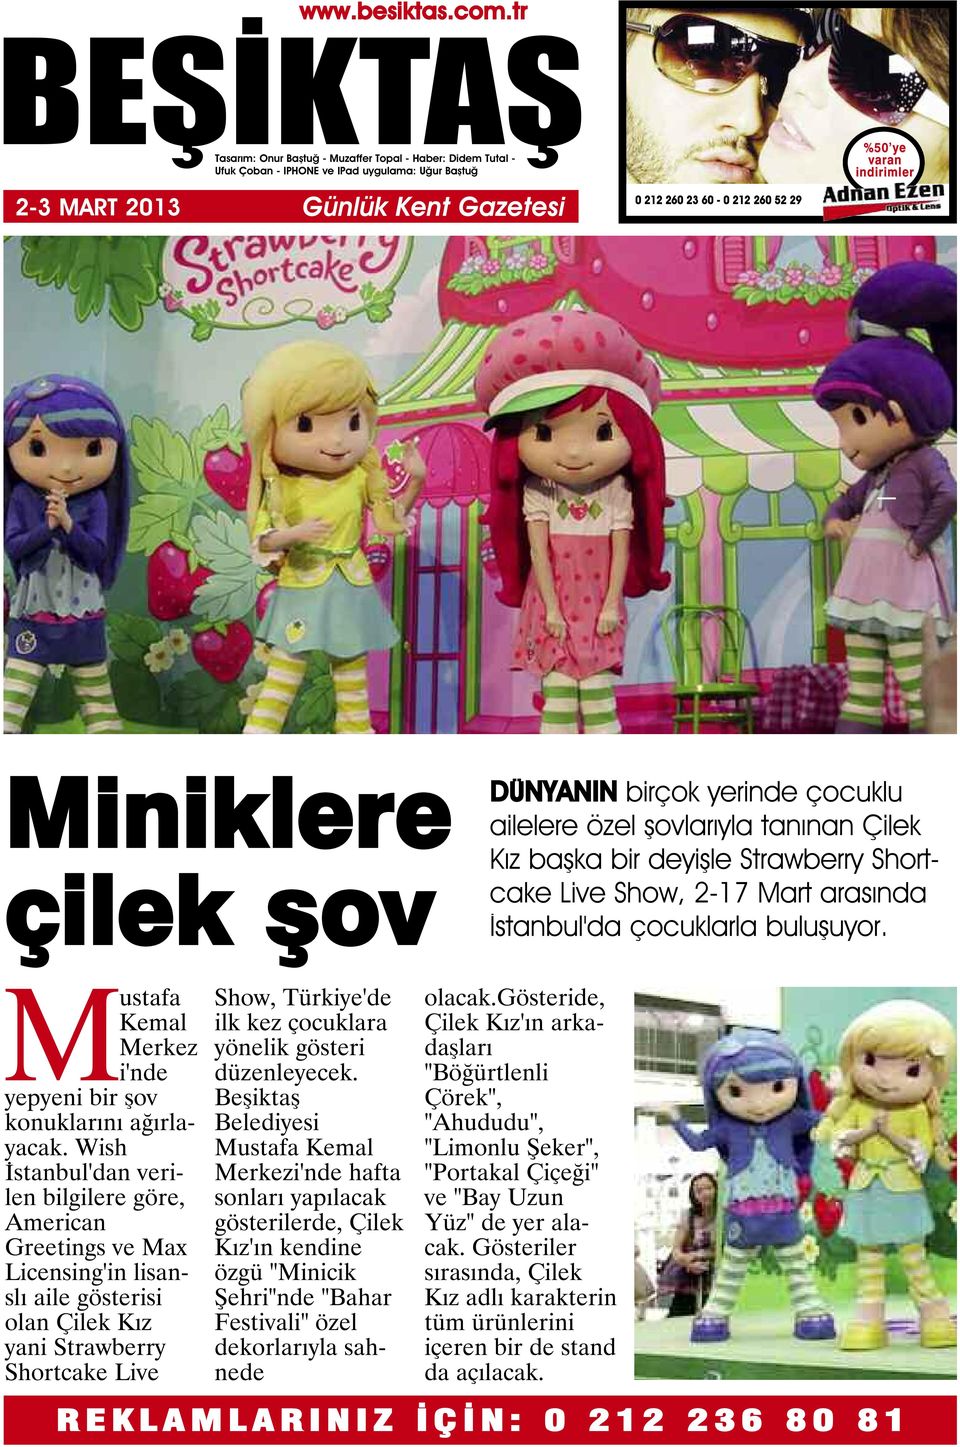 Wish İstanbul'dan verilen bilgilere göre, American Greetings ve Max Licensing'in lisanslı aile gösterisi olan Çilek Kız yani Strawberry Shortcake Live Show, Türkiye'de ilk kez çocuklara yönelik